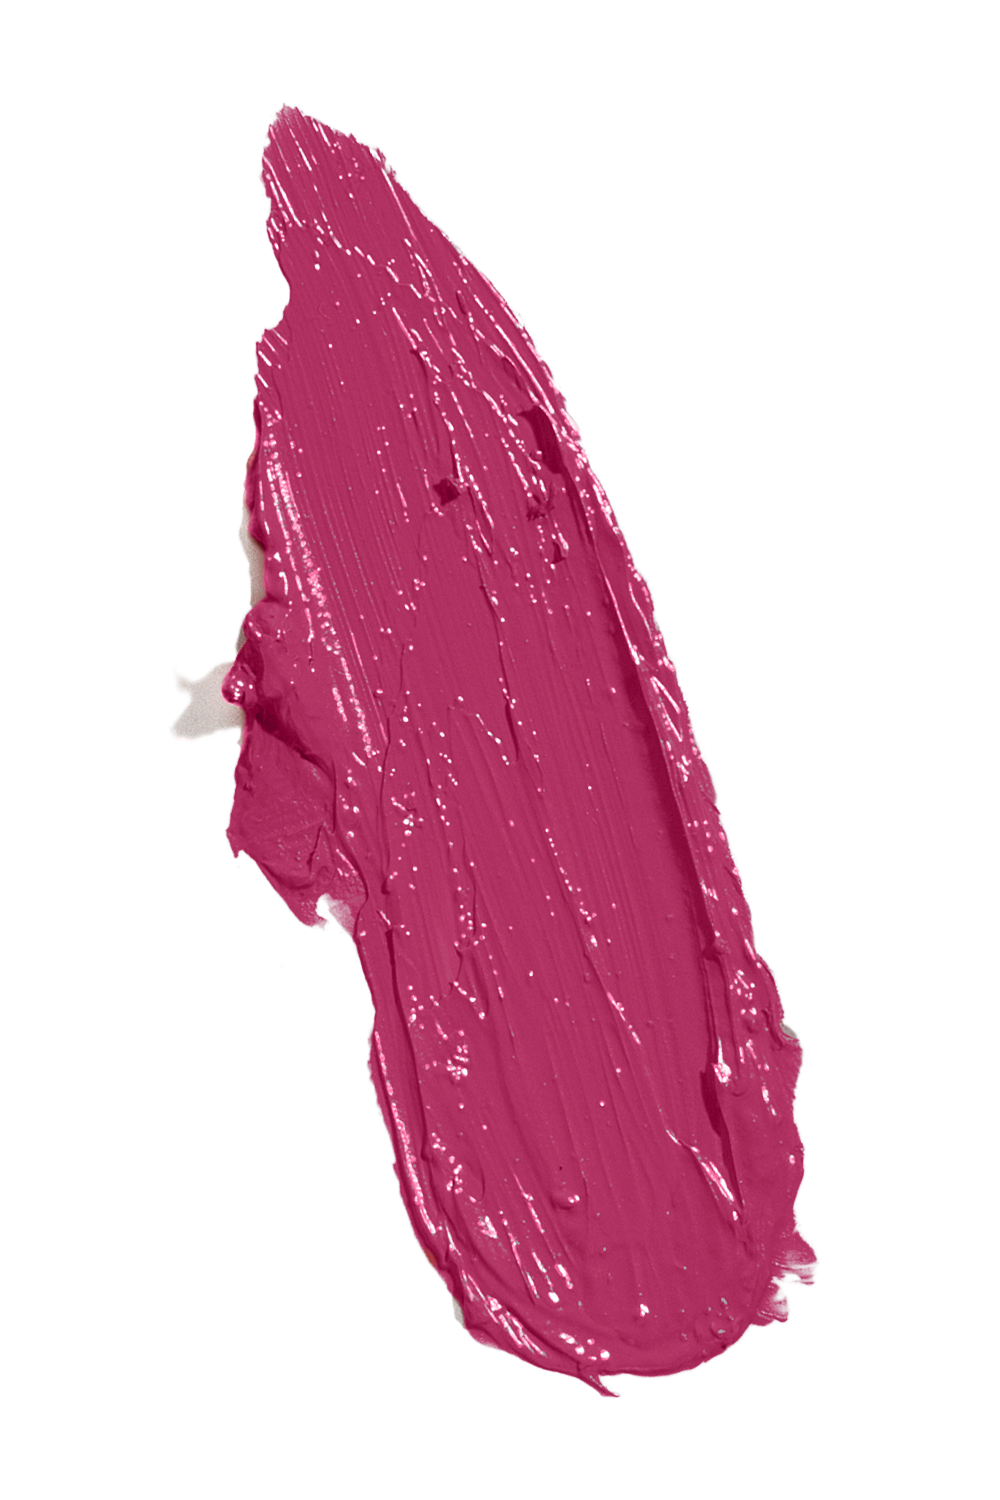 Cashmere Matte Liquid Lipstick - Royale